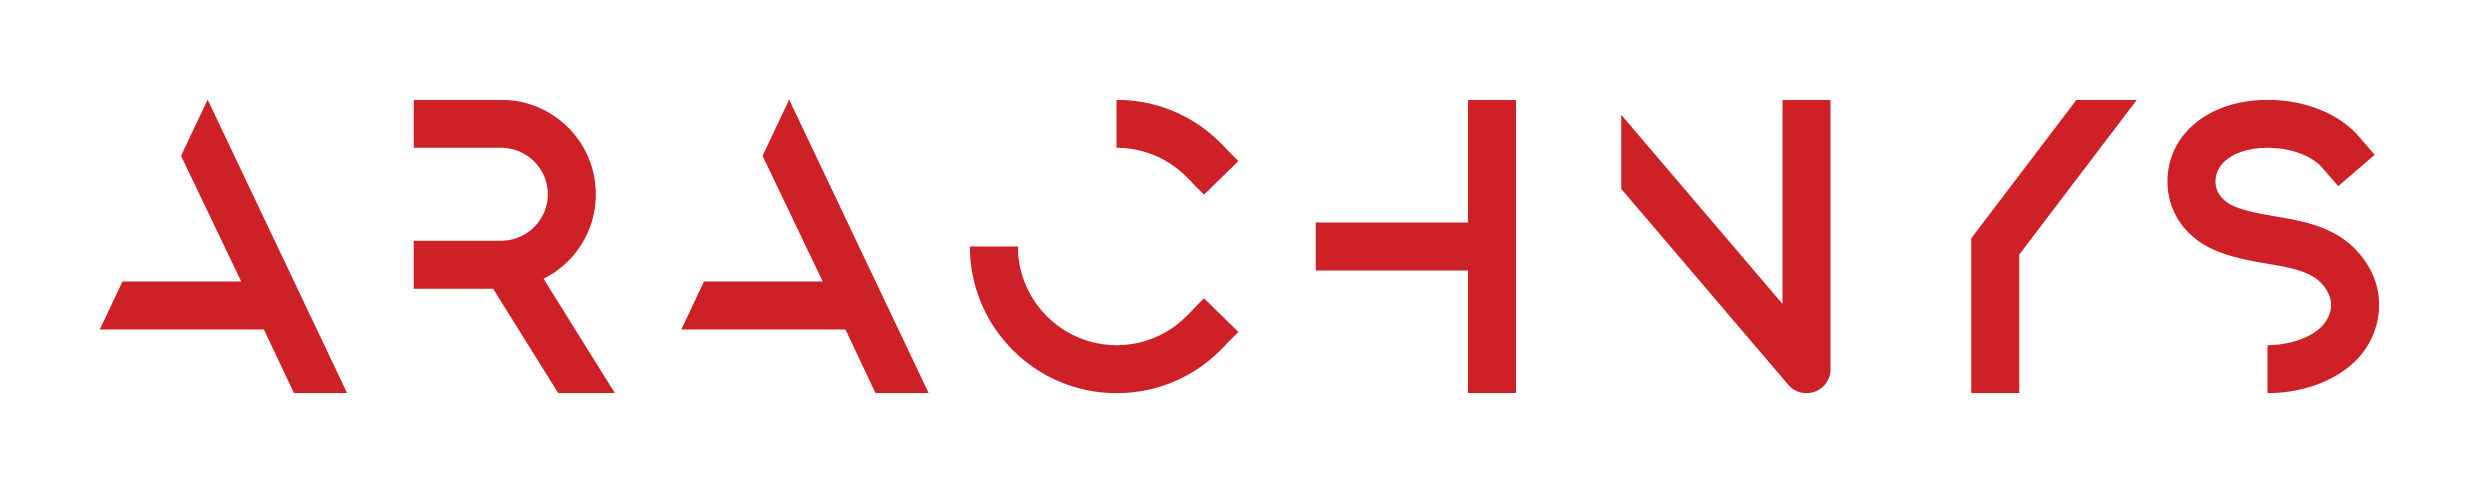 Arachnys_logo